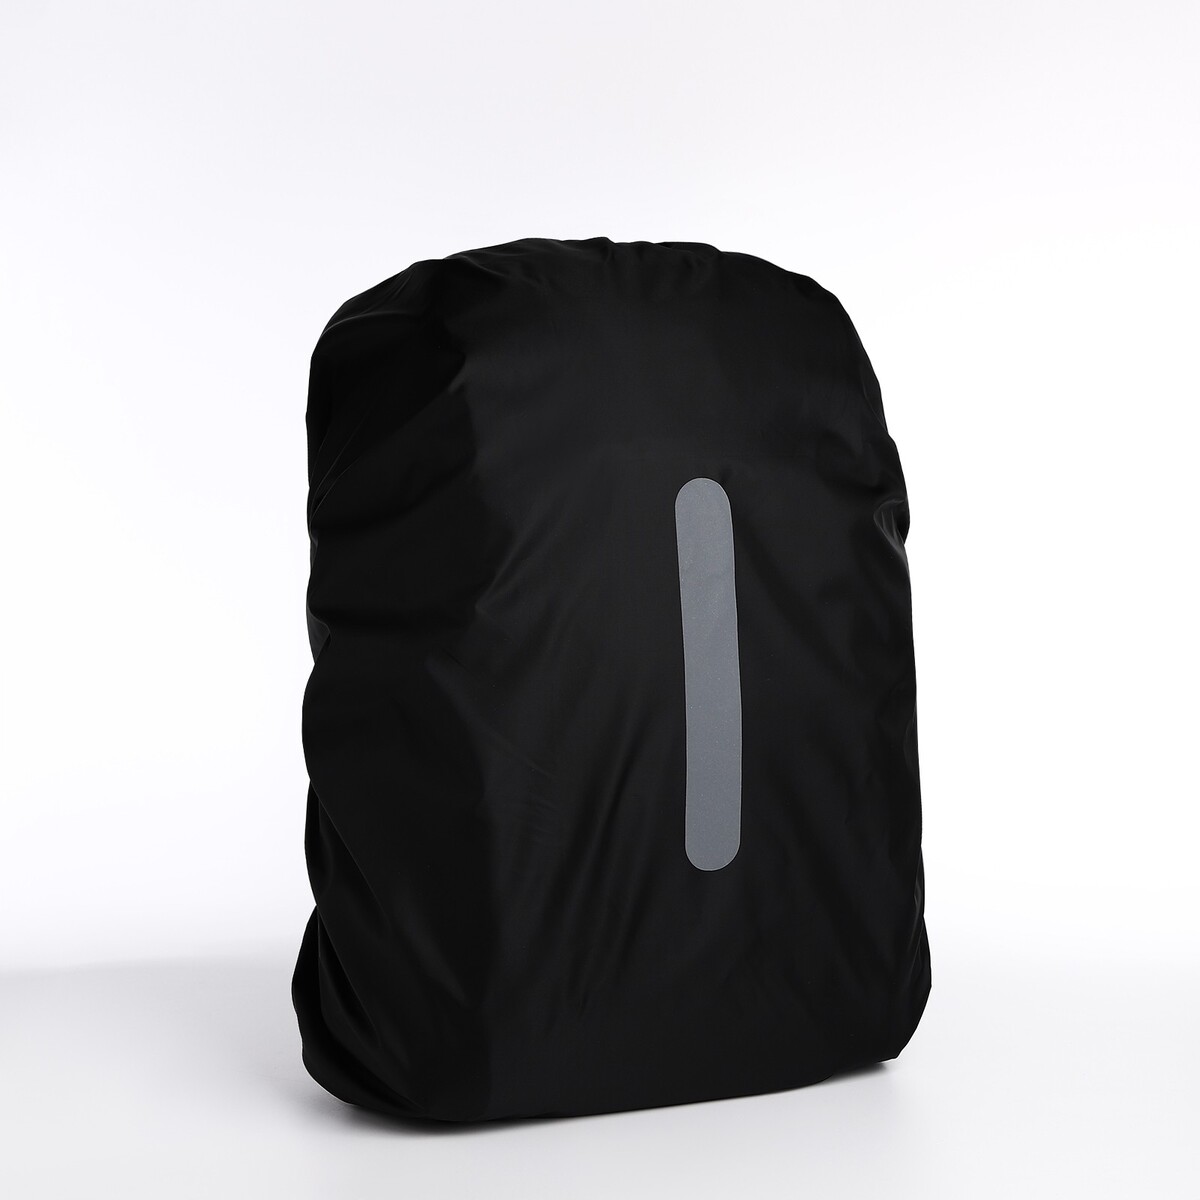 Чехол на рюкзак водоотталкивающий, объем 60 л, цвет черный